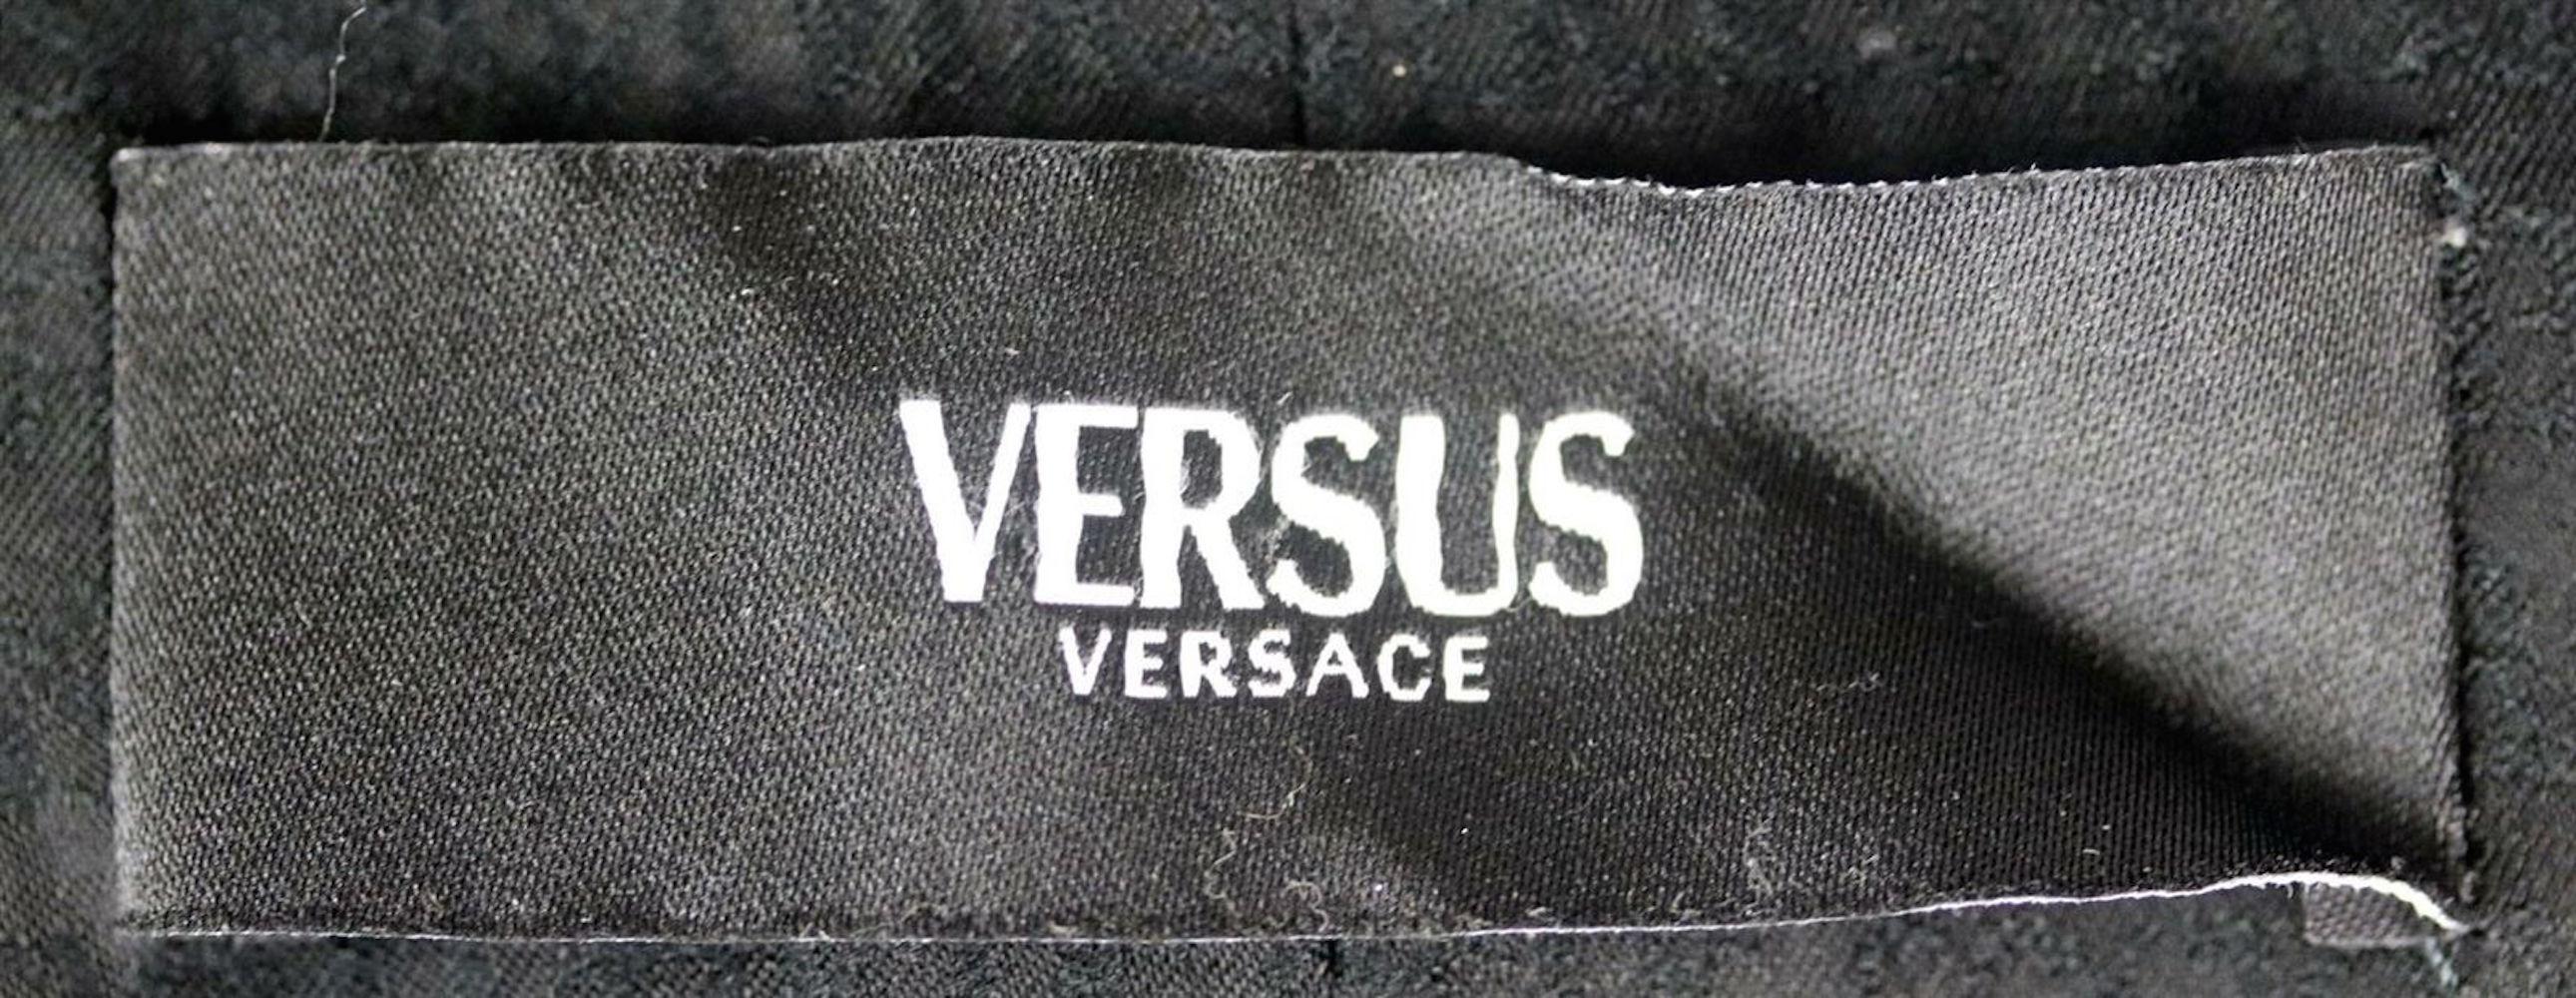 Black Versus Versace Lace Trimmed Cotton Blend Blazer